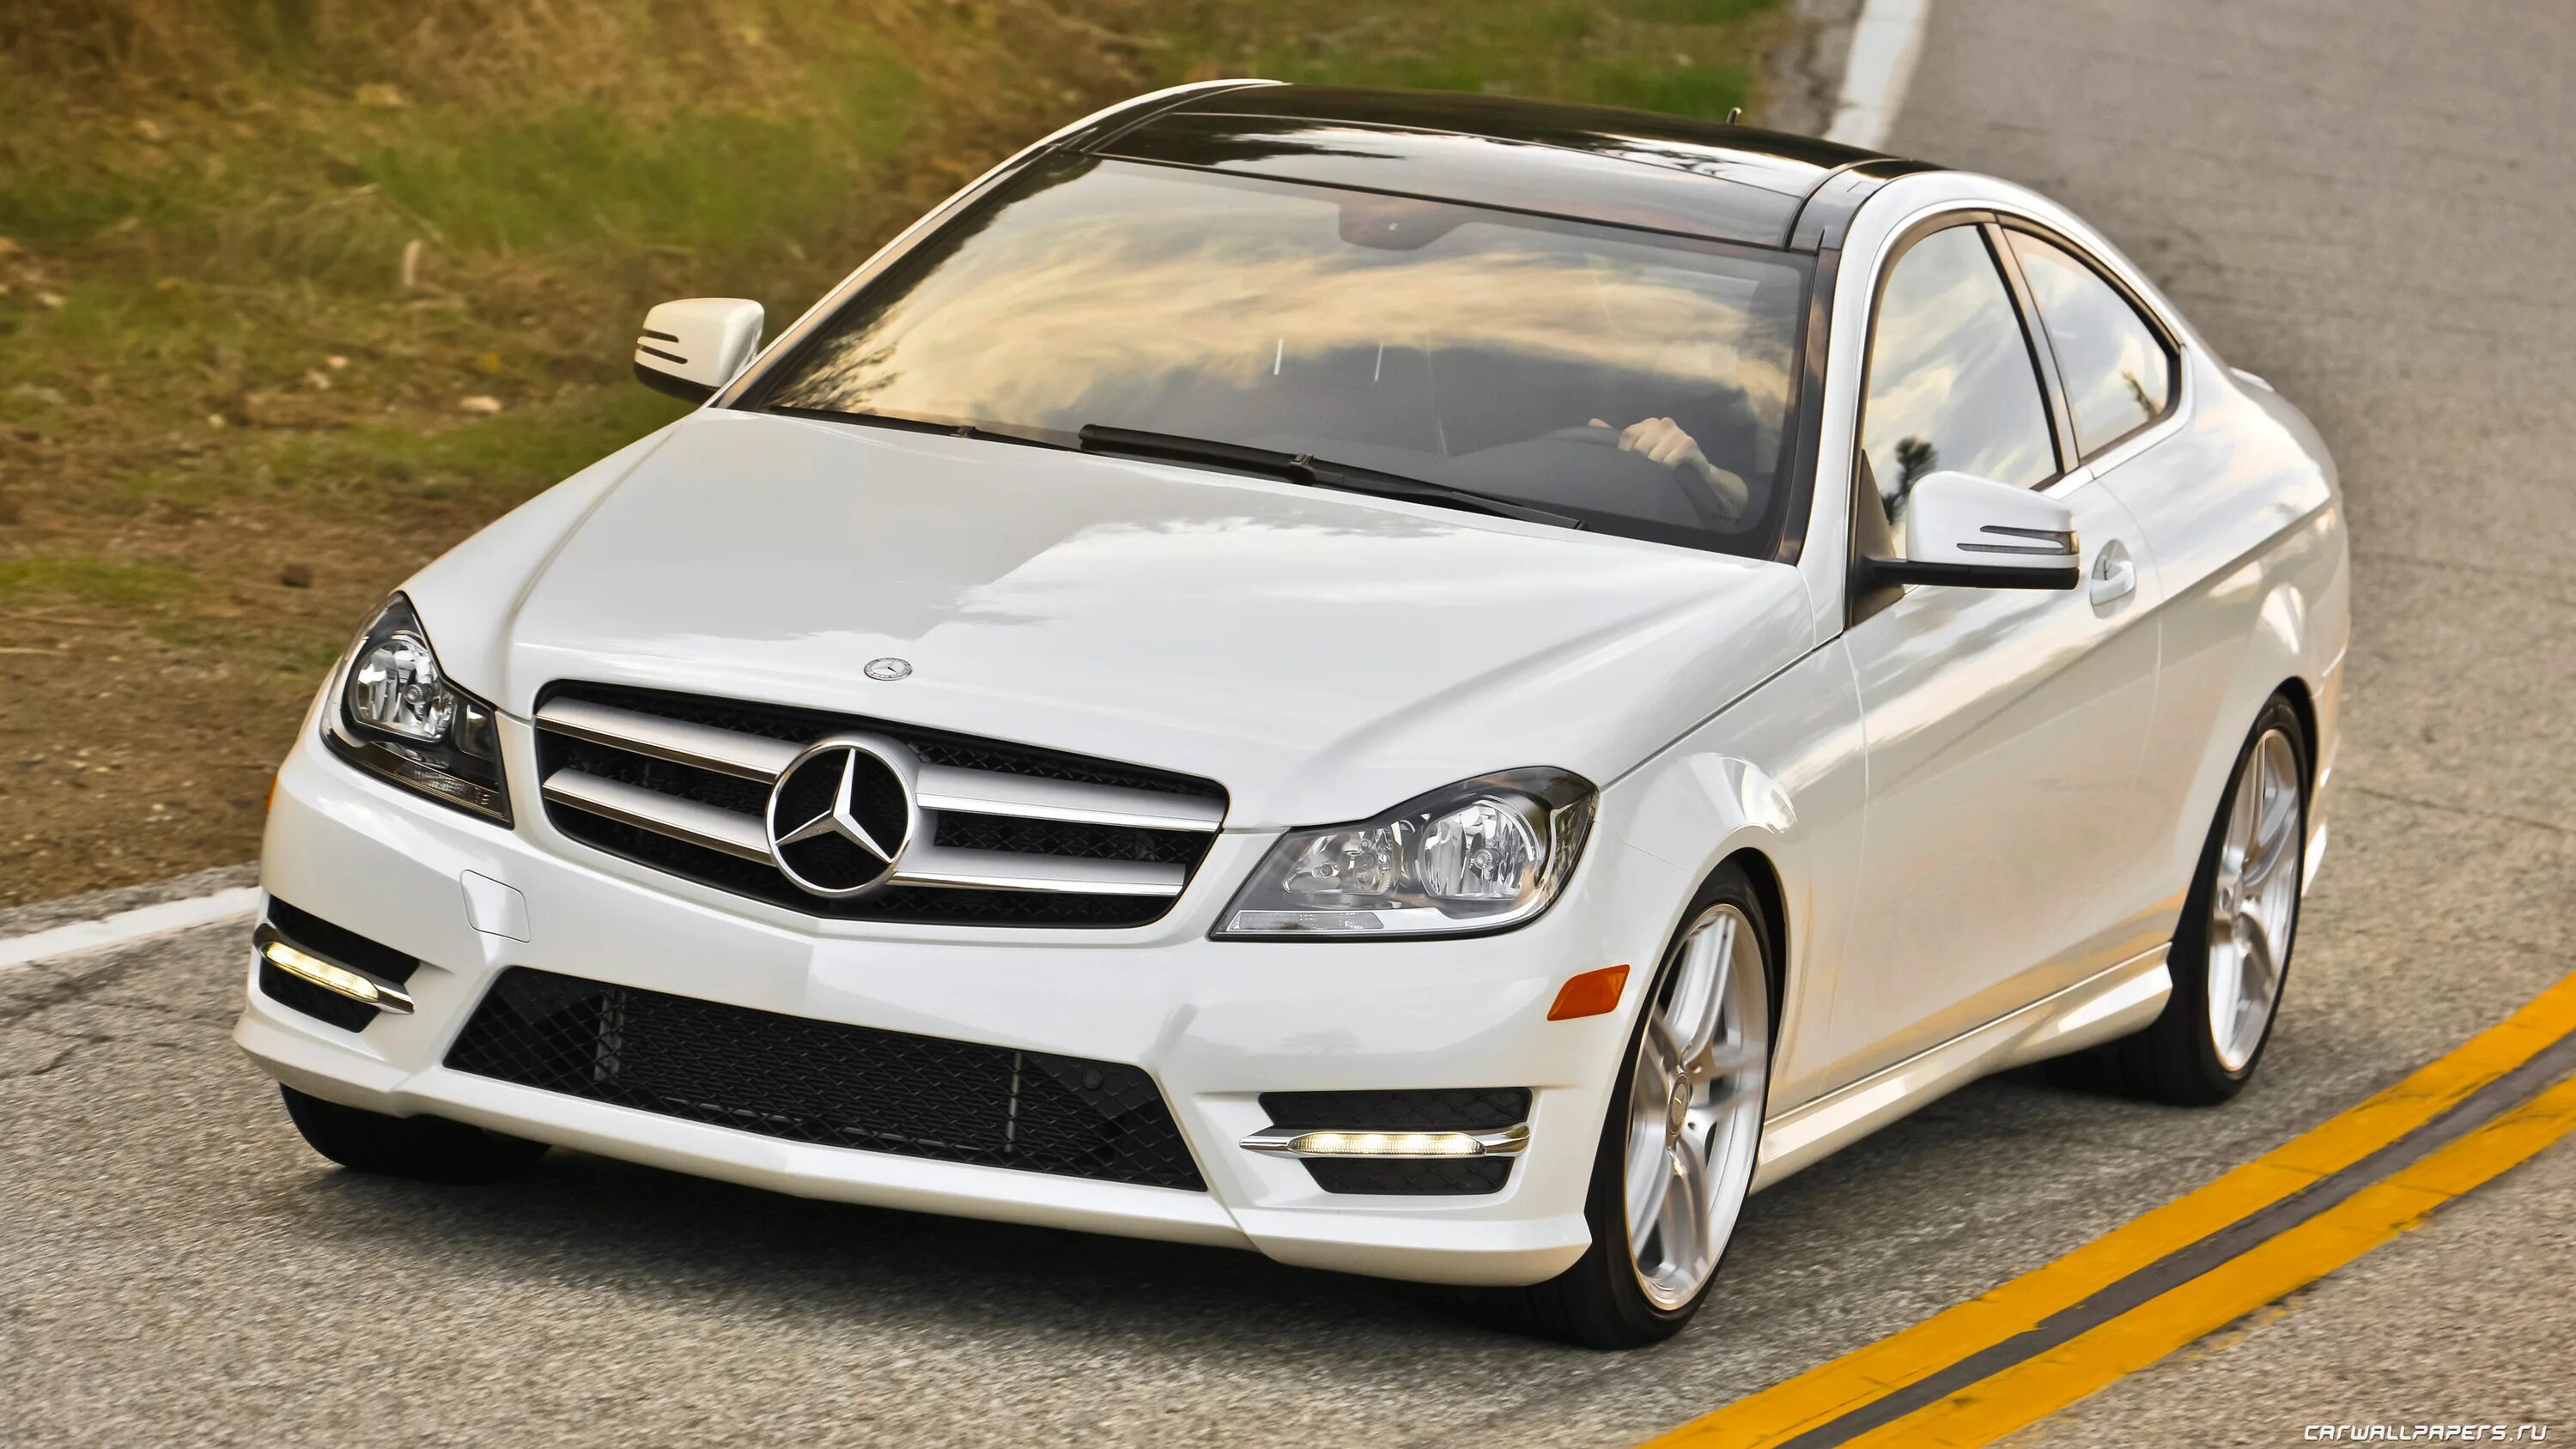 Купить мерседес c. Mercedes Benz c350. Мерседес ц 2013. Mercedes-Benz c-class 2013. Mercedes Benz c class 2013 Coupe.